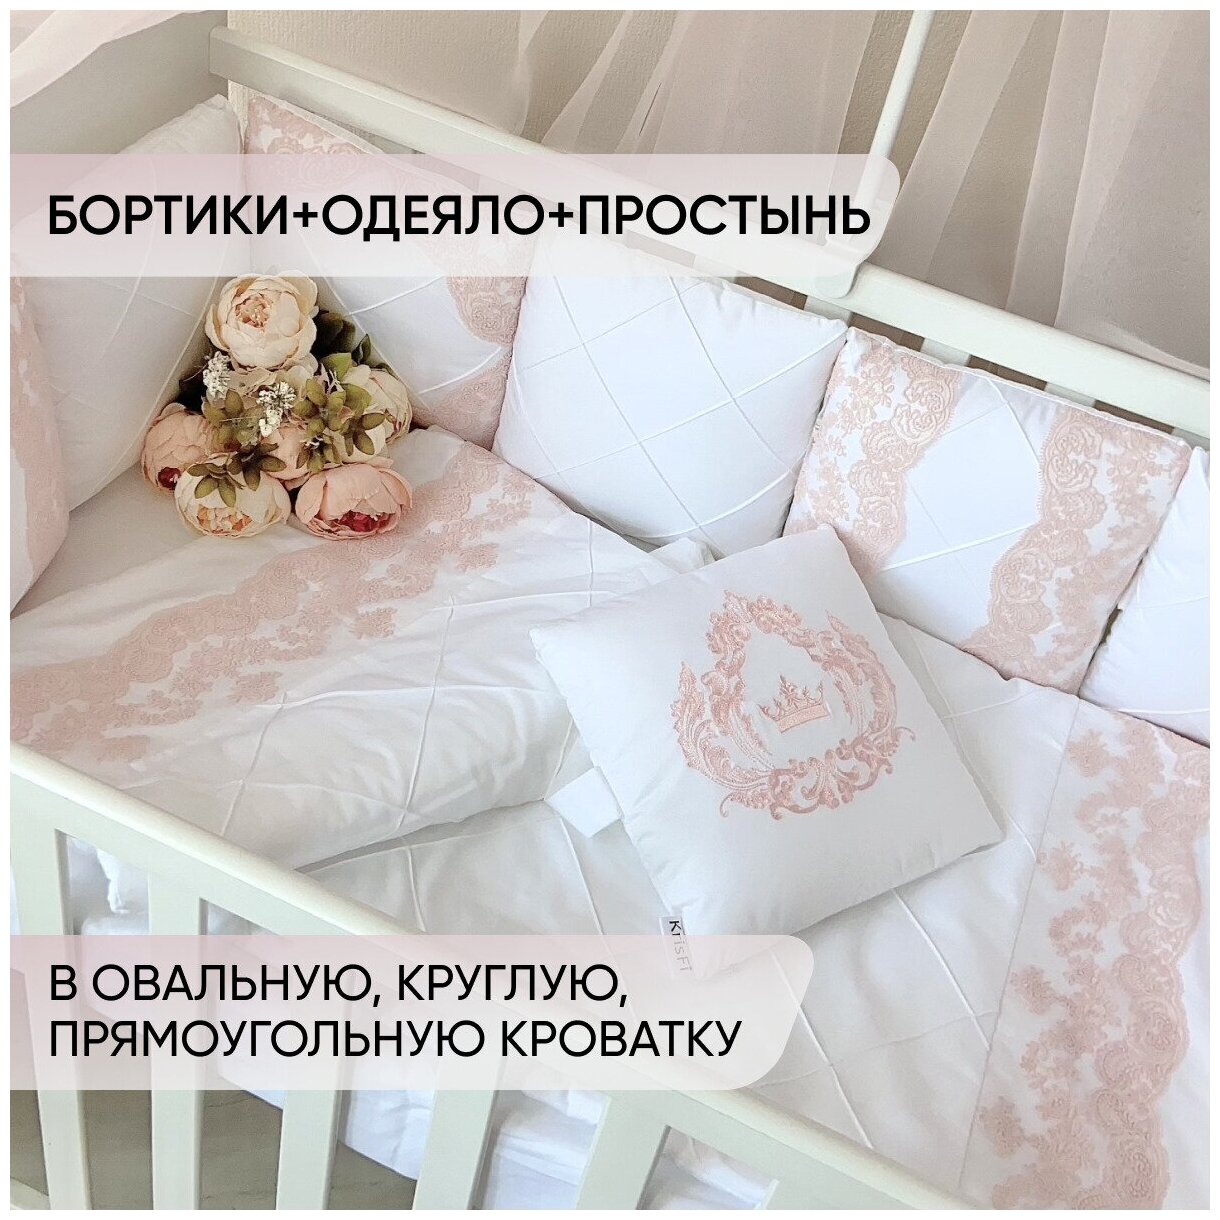 Комплект в детскую кроватку для новорожденного "Зефир", в прямоугольную кроватку 120*60 см